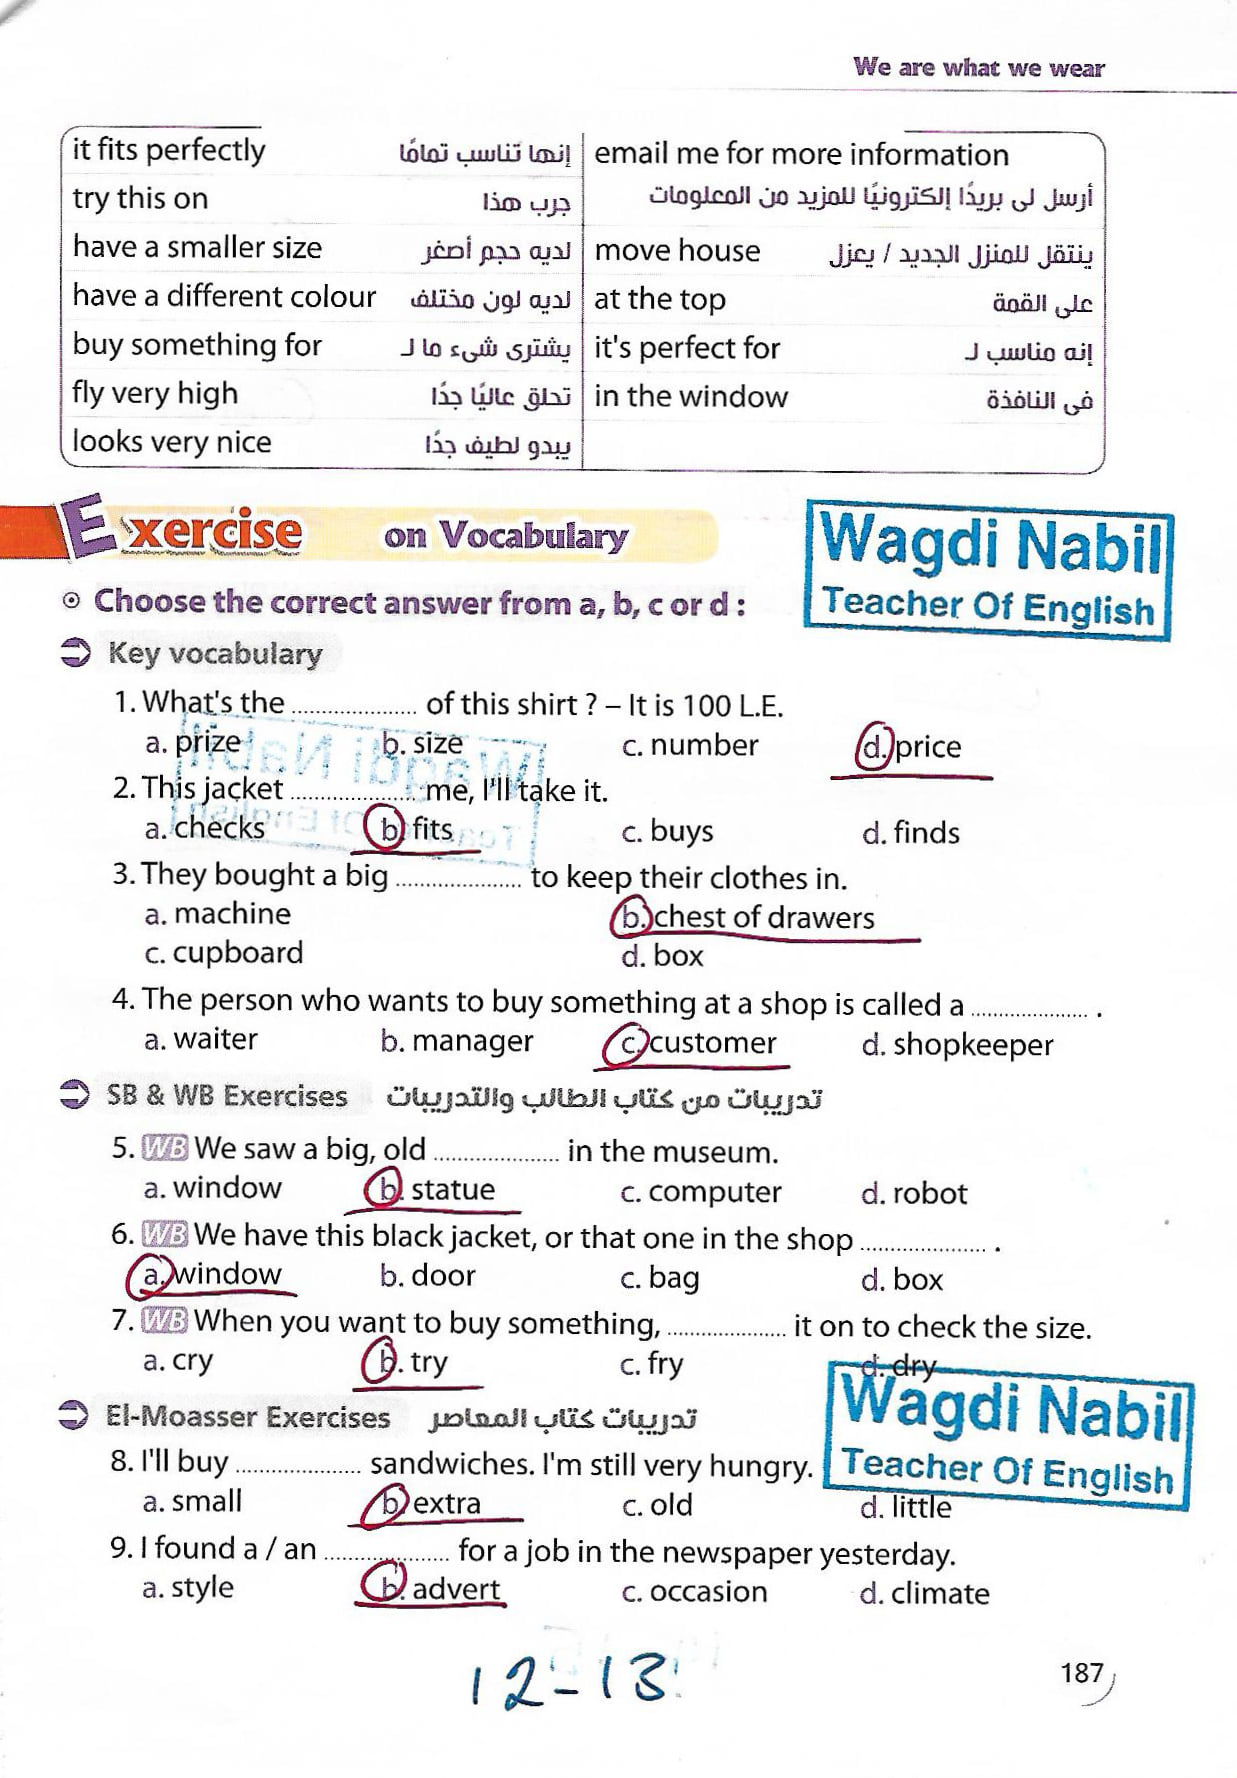 مراجعة اللغة الانجليزية للصف الثاني الاعدادي الترم الثاني mr _ Wagdi Nabil 9